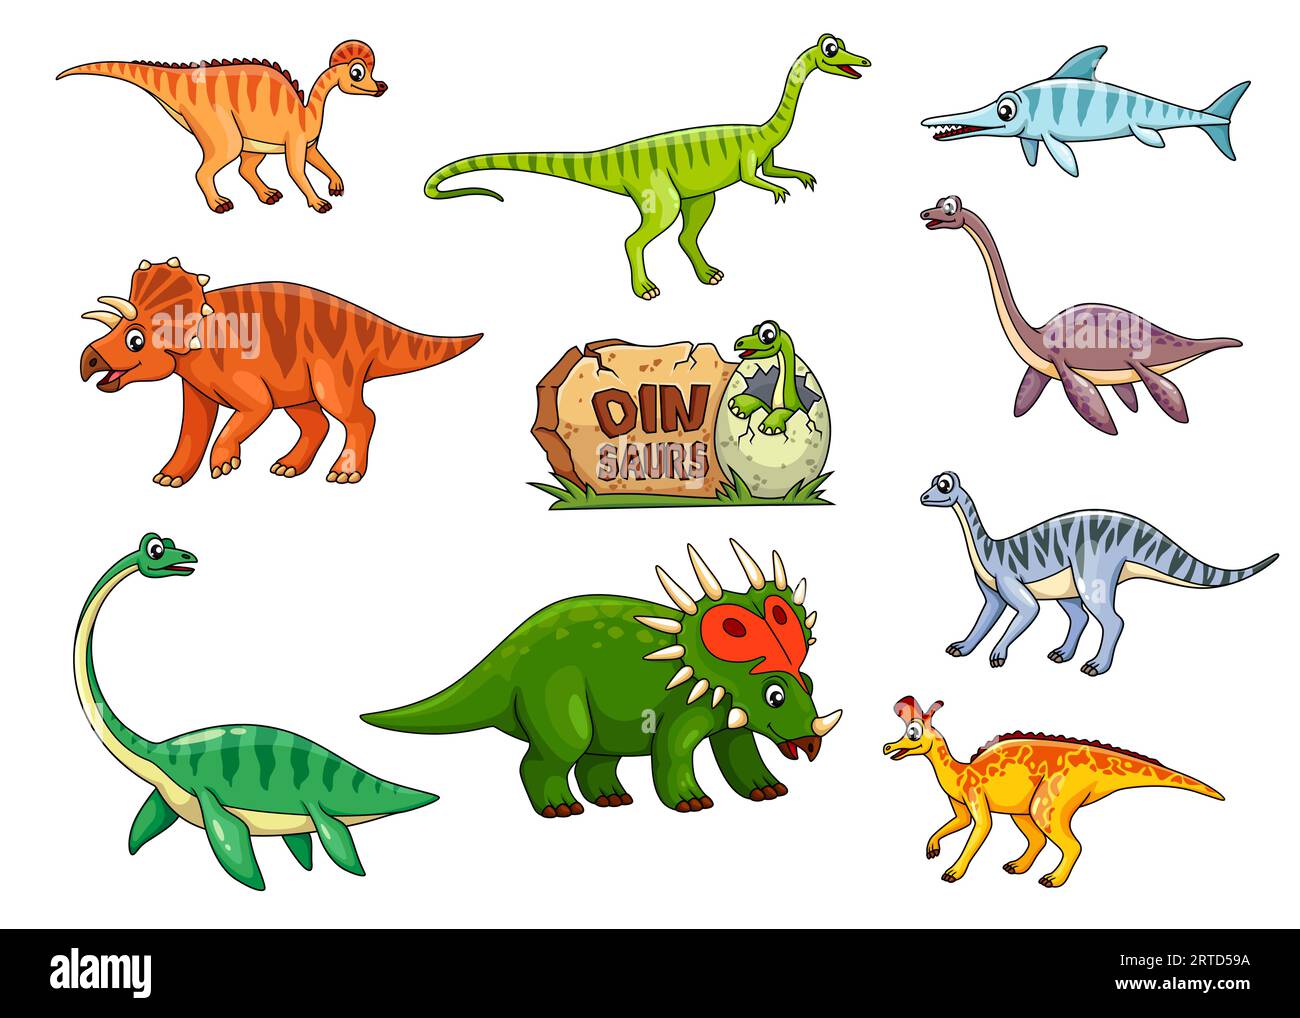 Personnages de dinosaures de dessin animé ou reptiles et lézards de dino Jurassique, jouets vectoriels pour enfants. Personnages de dinosaures mignons monstres et drôle chapeau de bébé joyeux dino Illustration de Vecteur